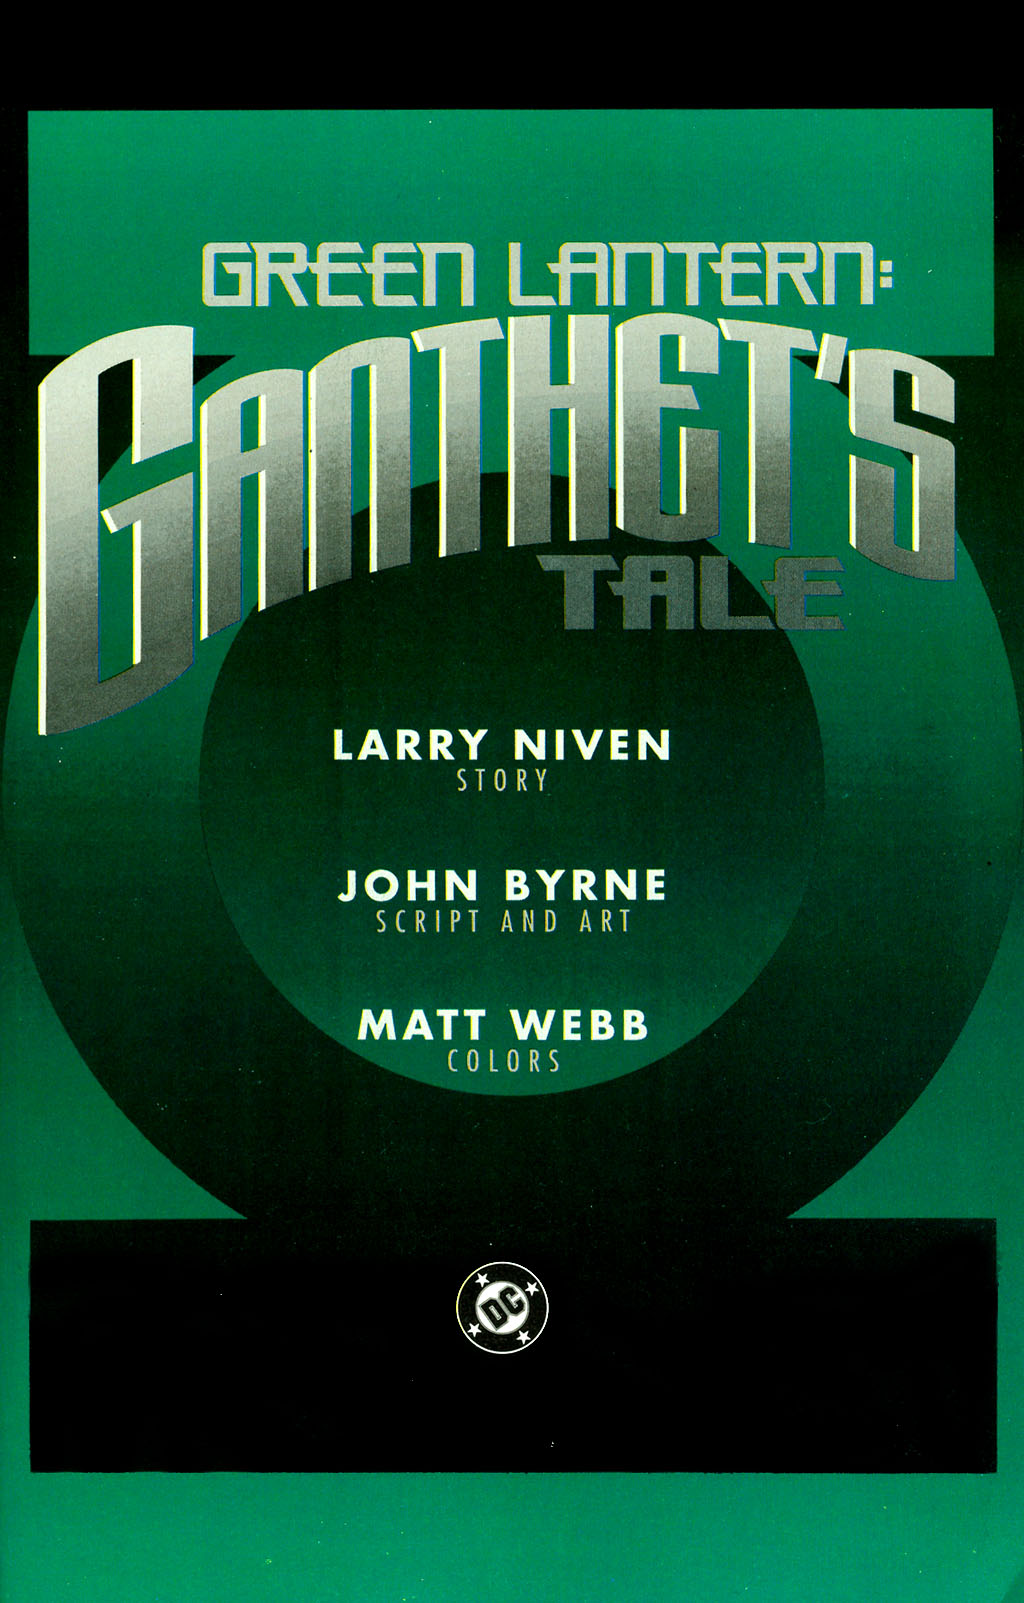 Read online Green Lantern: Ganthet's Tale comic -  Issue # Full - 3